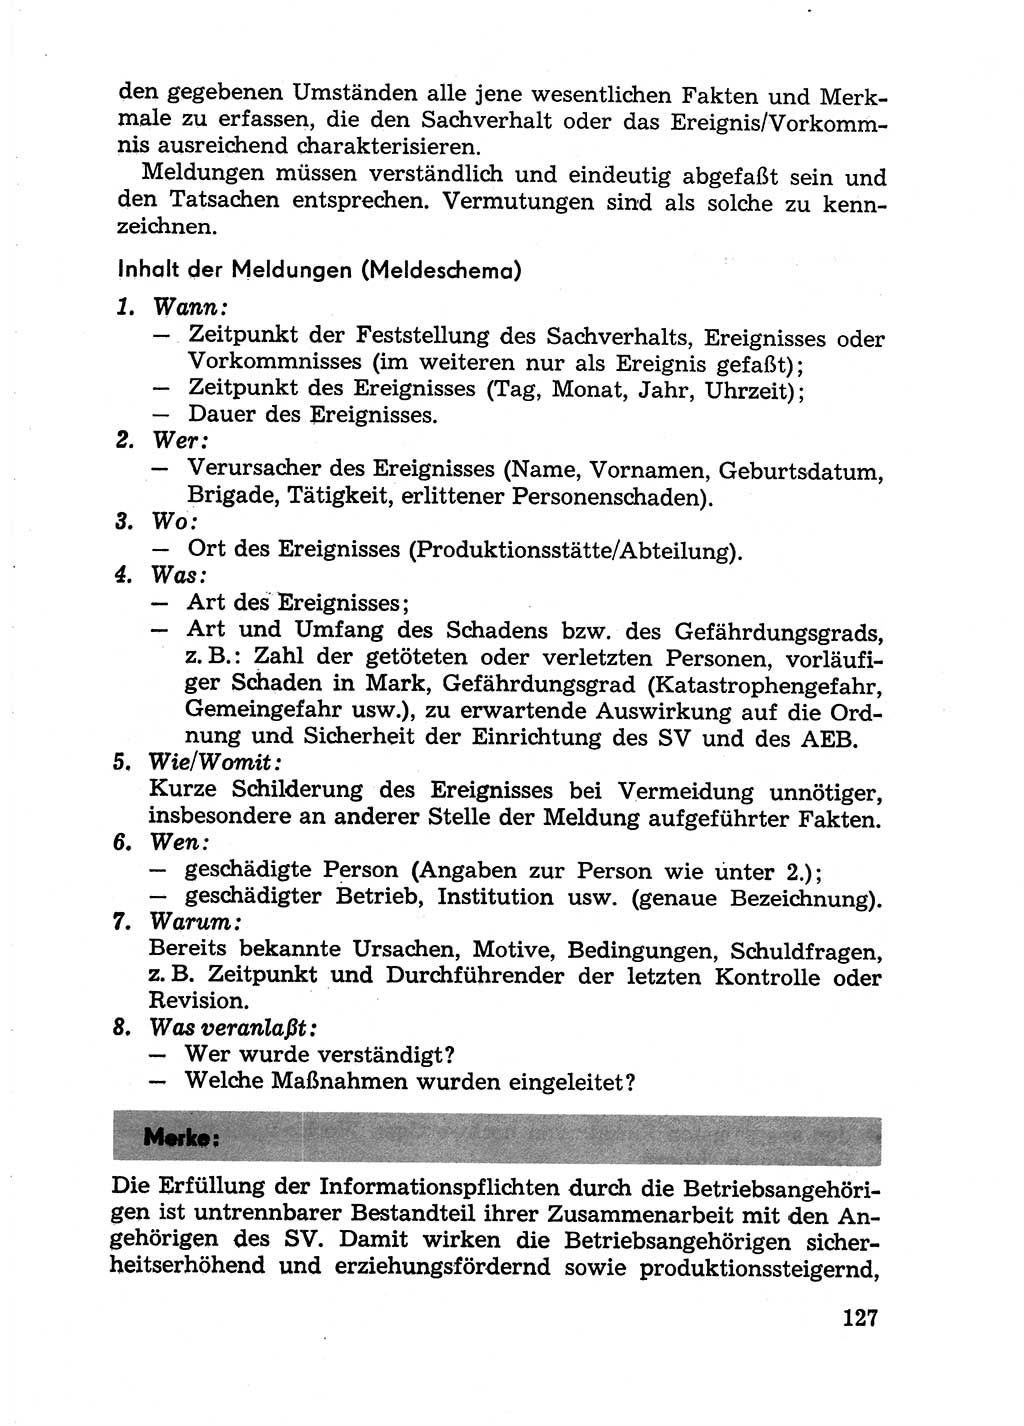 Handbuch für Betriebsangehörige, Abteilung Strafvollzug (SV) [Ministerium des Innern (MdI) Deutsche Demokratische Republik (DDR)] 1981, Seite 127 (Hb. BA Abt. SV MdI DDR 1981, S. 127)